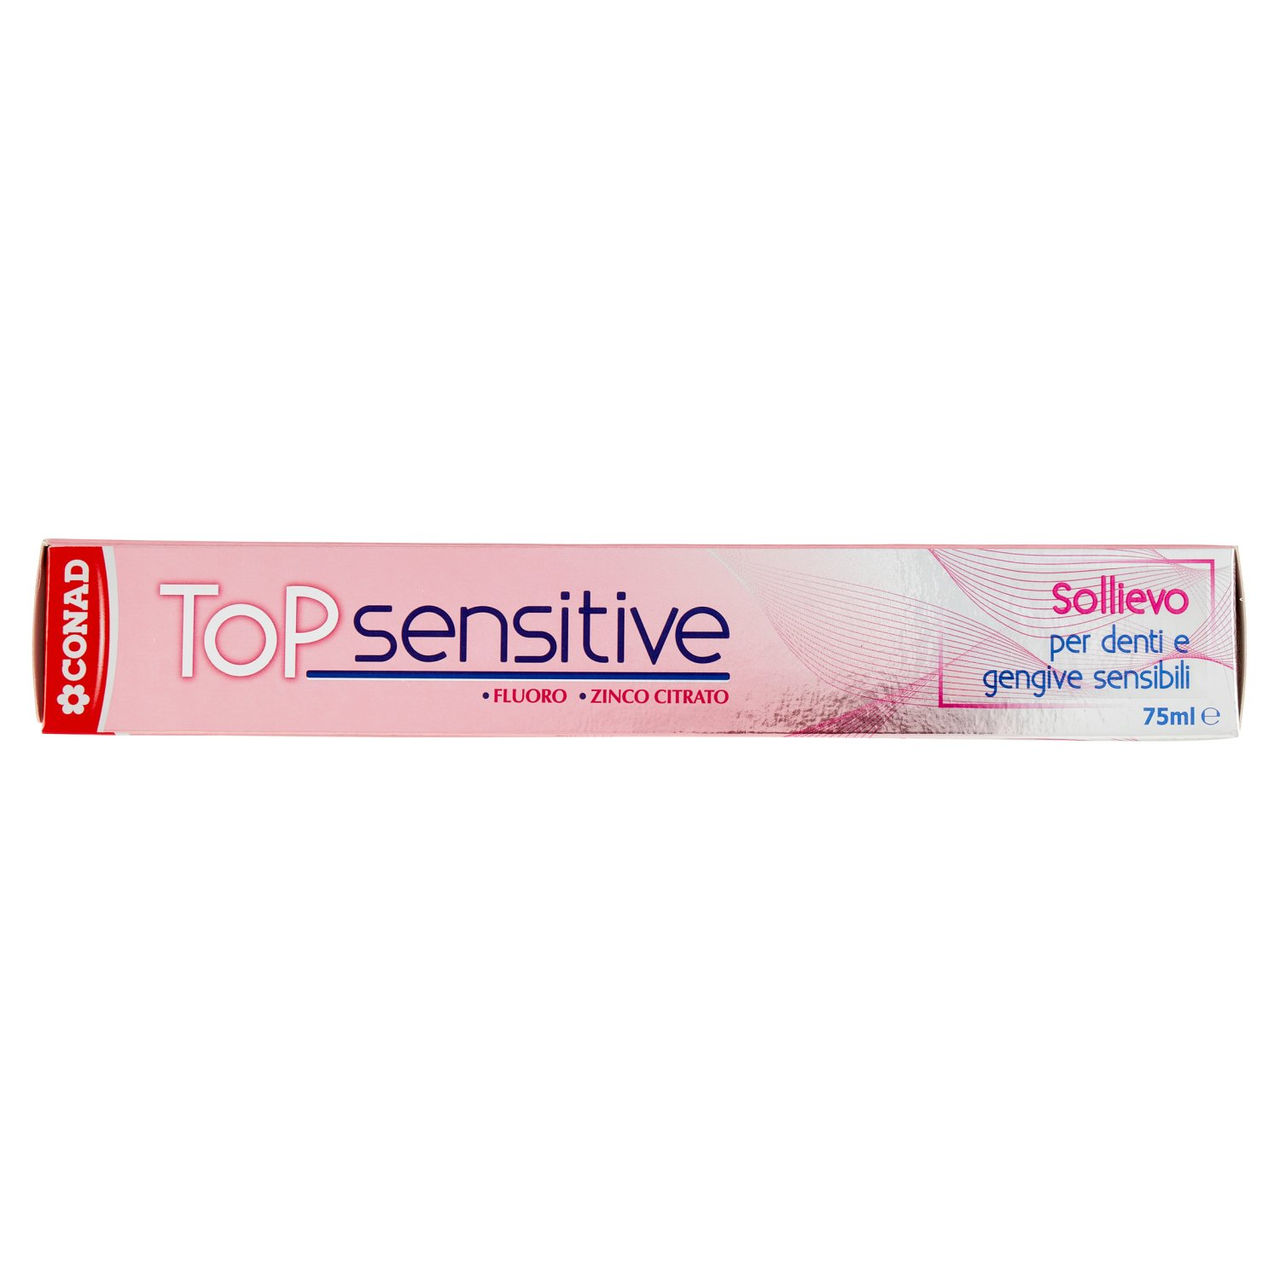 Dentifricio Top Sensitive 75 ml Conad online